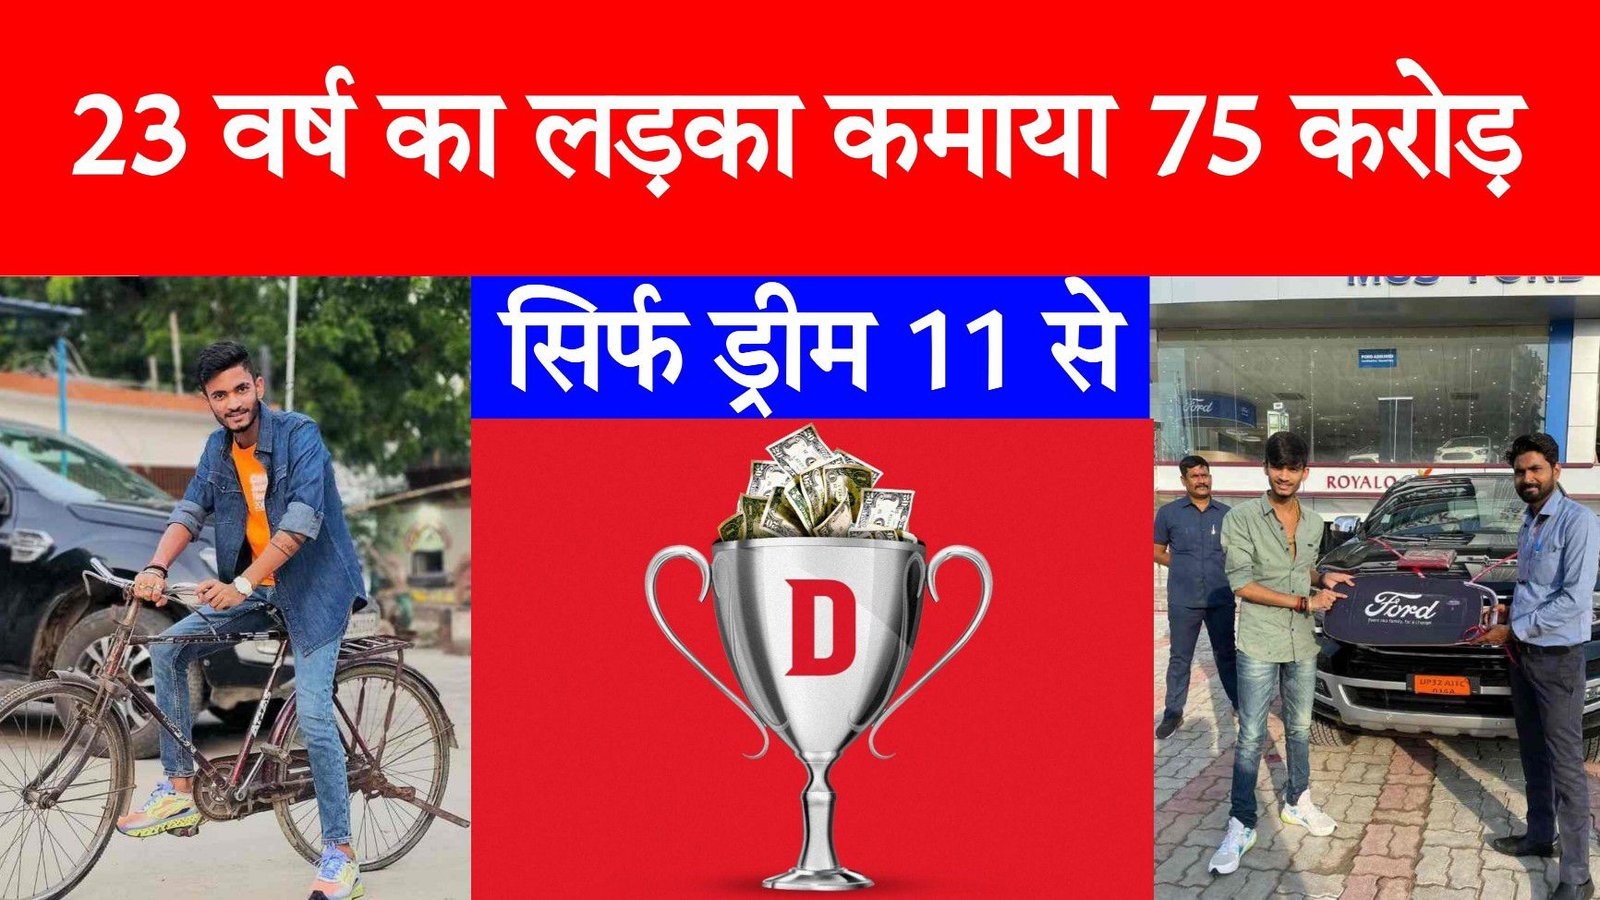 Dream11 पर 23 वर्ष के लड़के ने जीते पुरे ₹75 करोड़, पहले चलाते थे साइकिल और अब चलते हैं फेरारी कार !